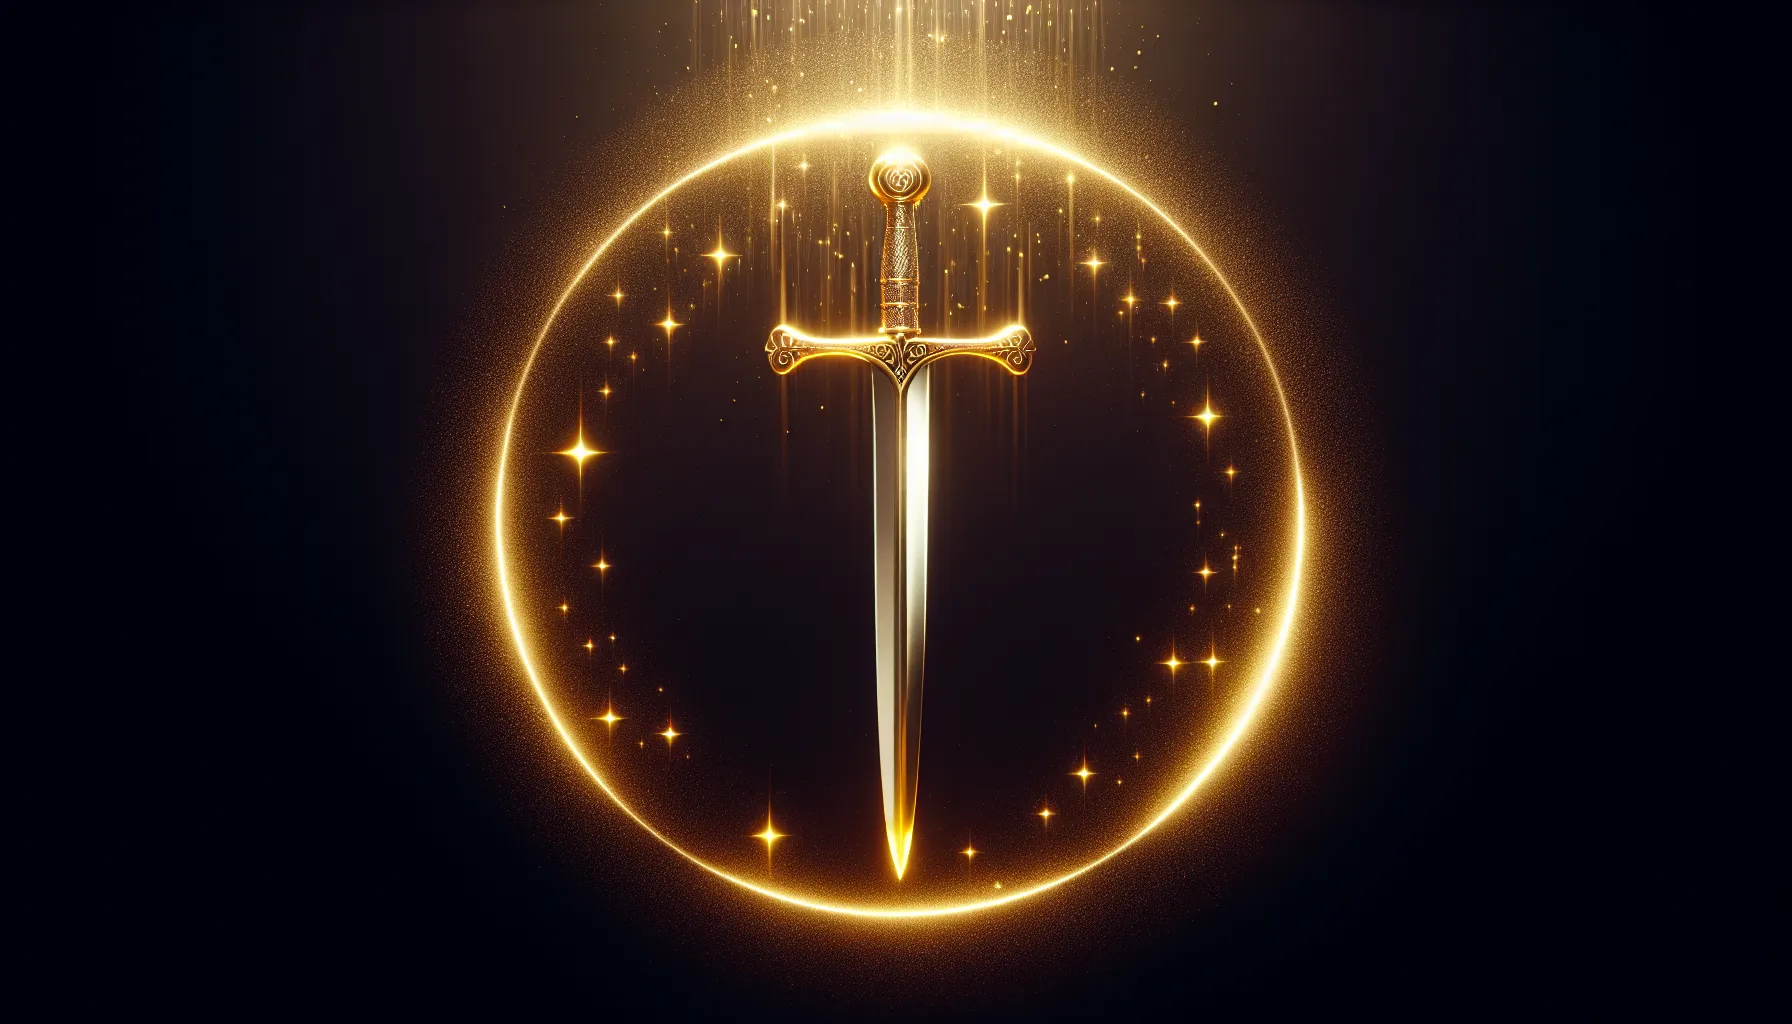 Espada brillante rodeada de luz dorada, simbolizando el poder y la protección divina que representa la Espada del Espíritu en la Biblia.